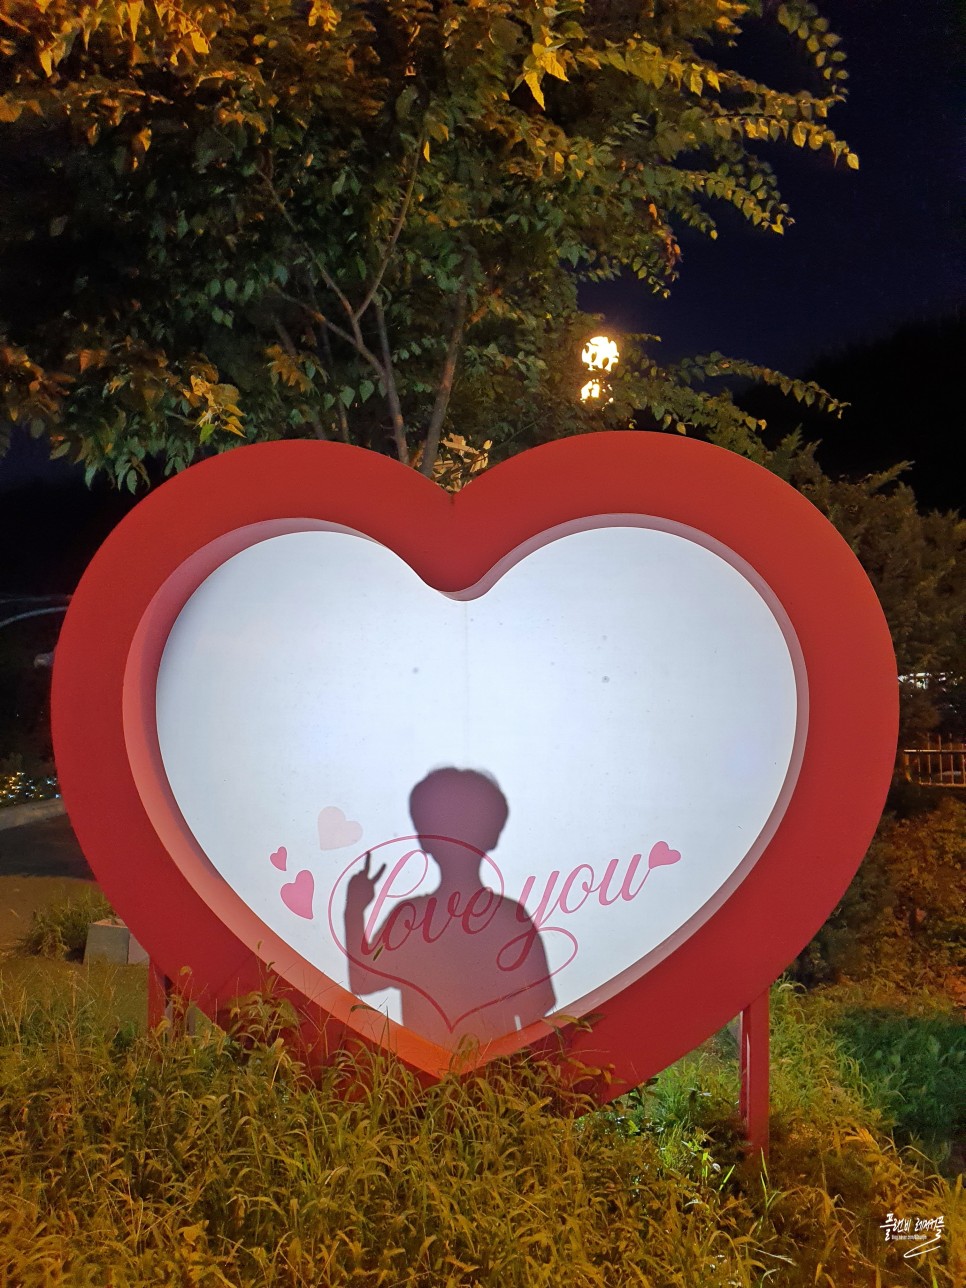 서울근교 야경 경기도 밤에 가볼만한곳 서울랜드 놀이동산공원